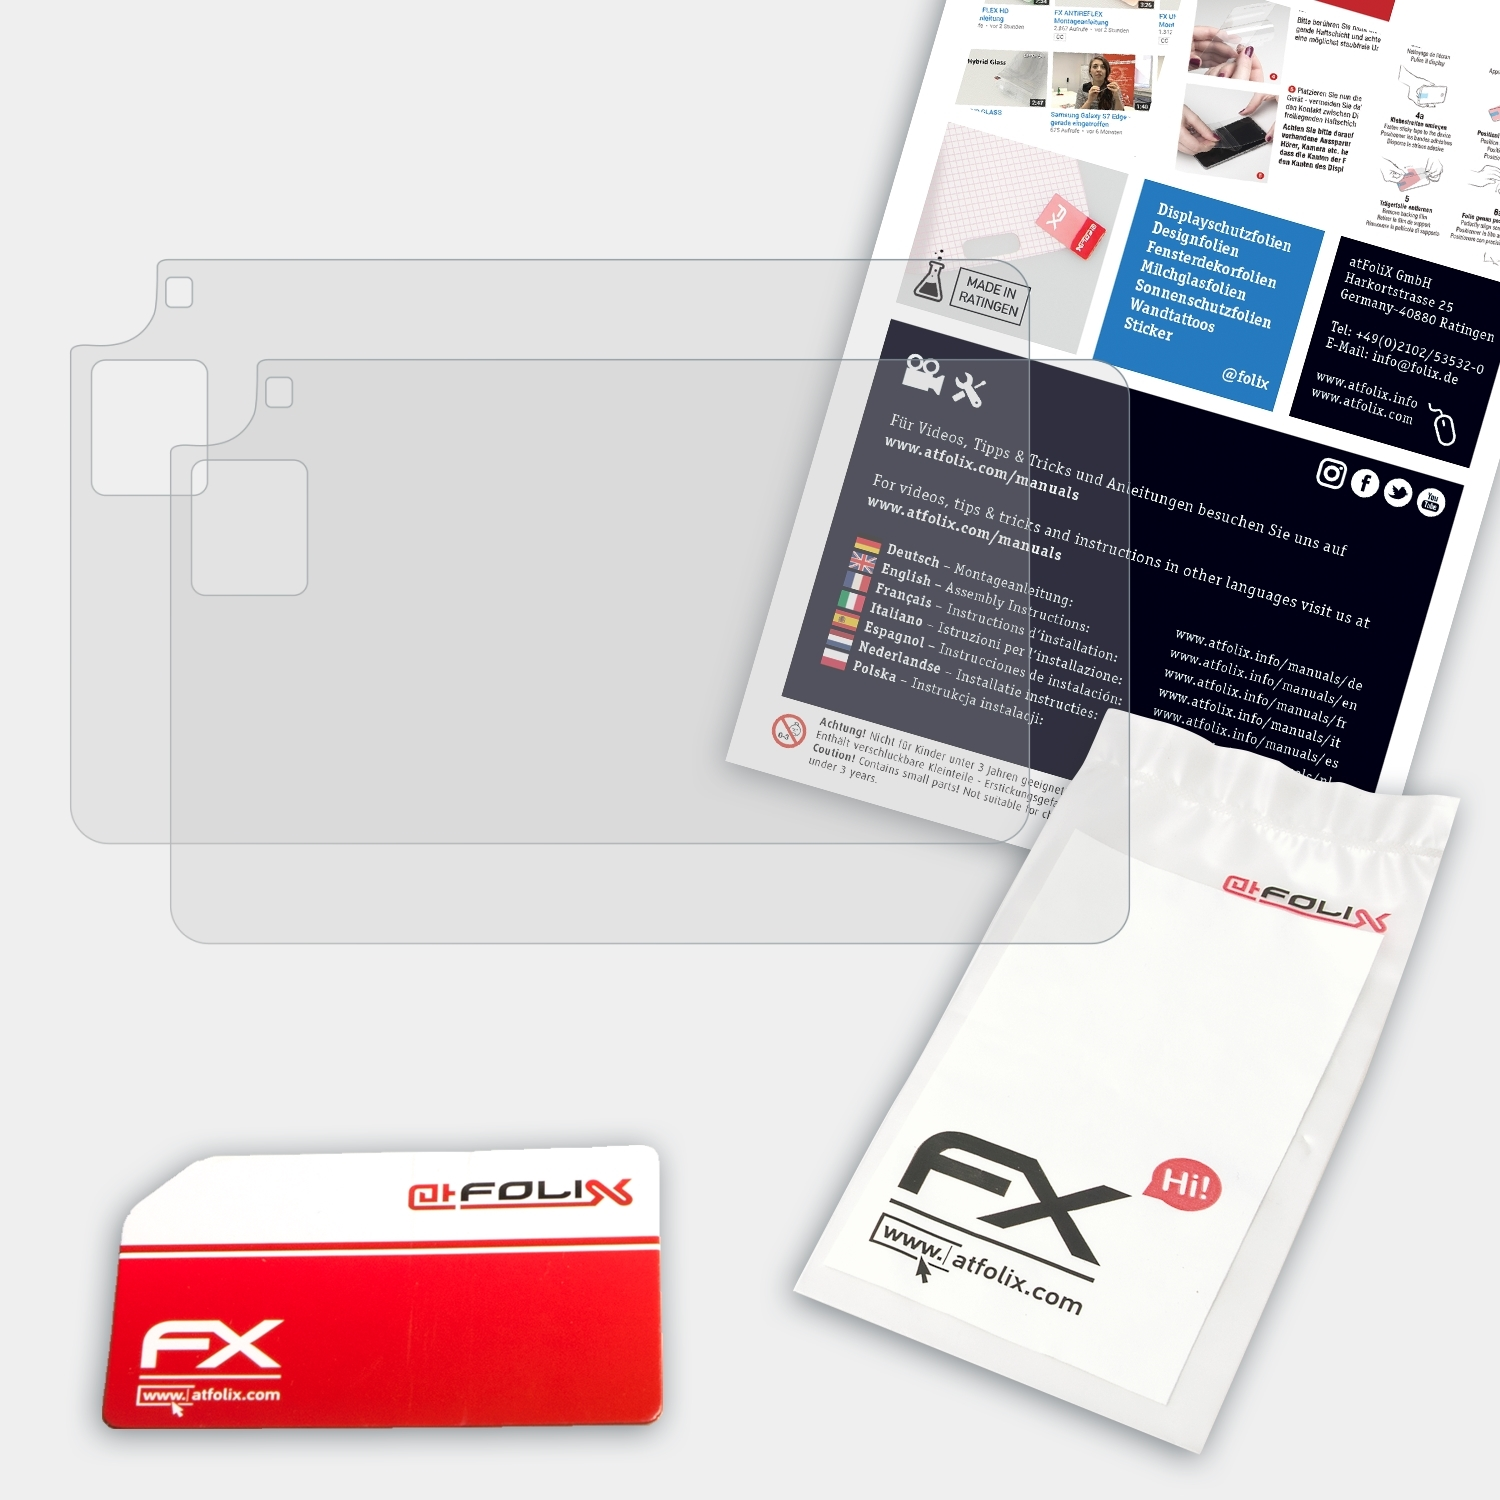 ATFOLIX 2x FX-Antireflex 03) XP-PEN Displayschutz(für Deco